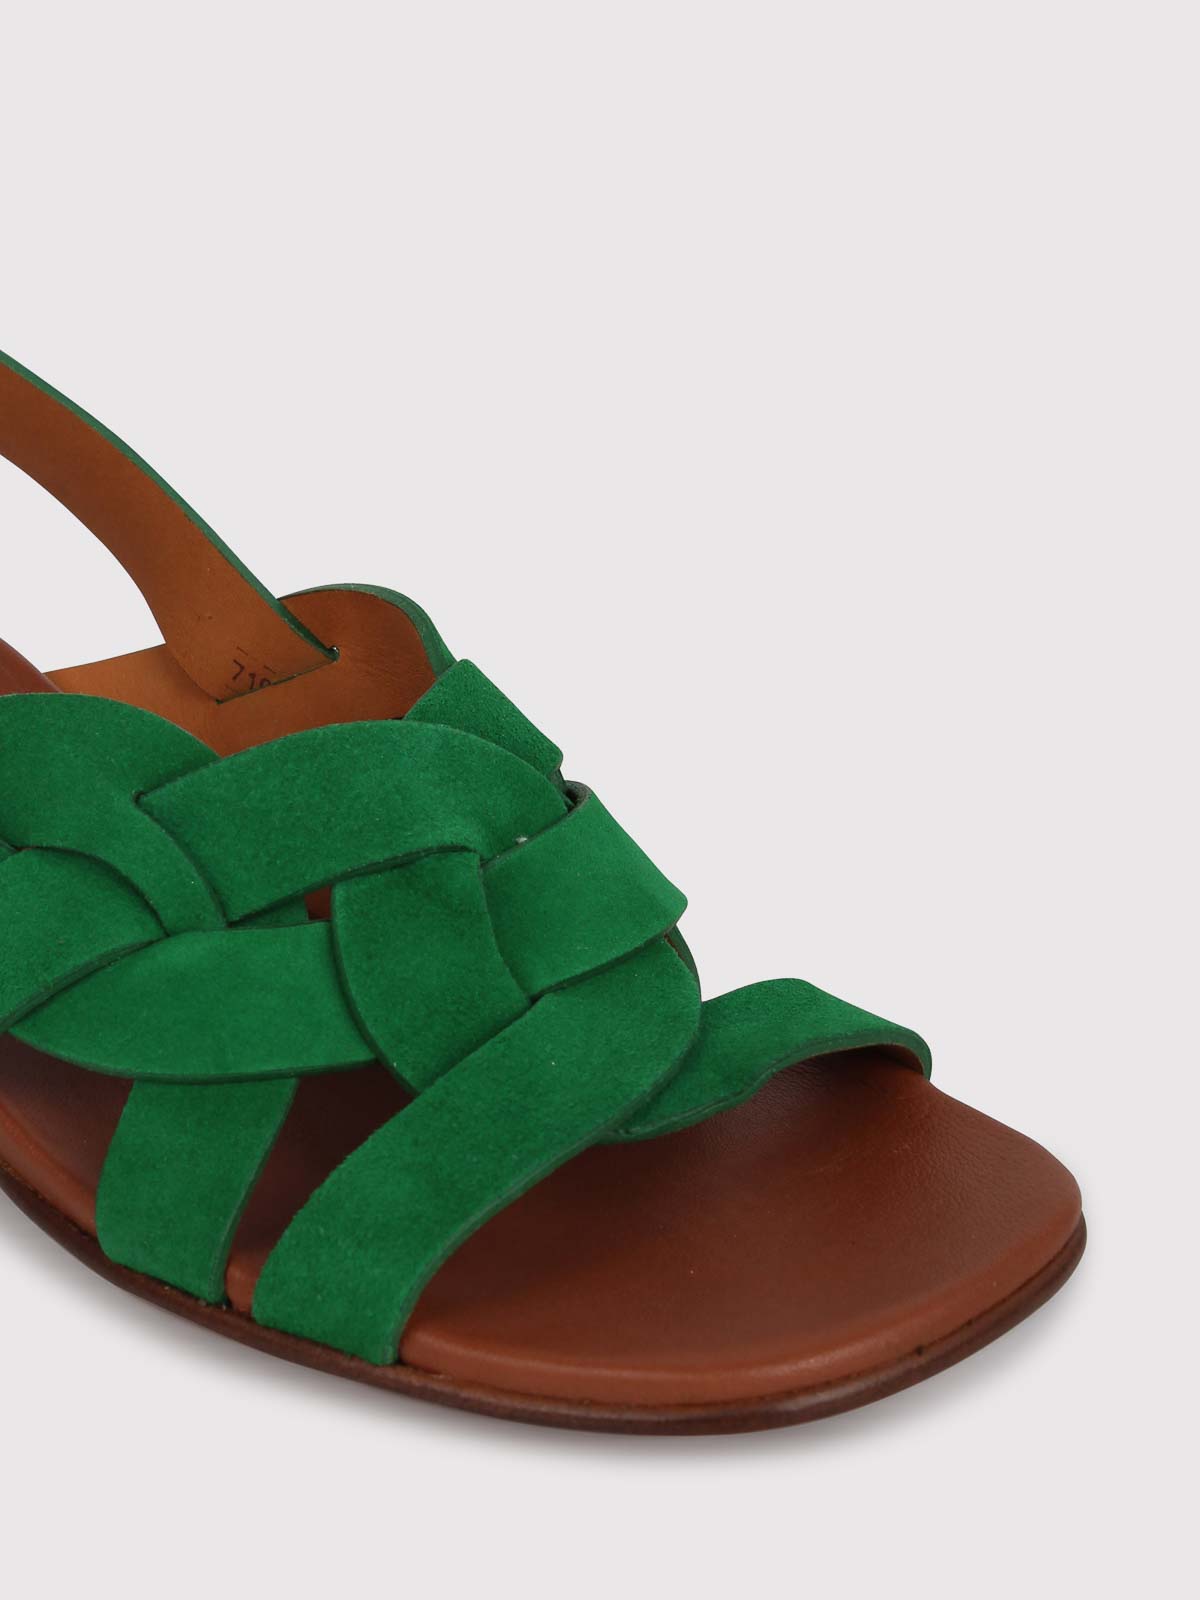 Shop Chie Mihara Quirino 50mm Sandals In Multicolour